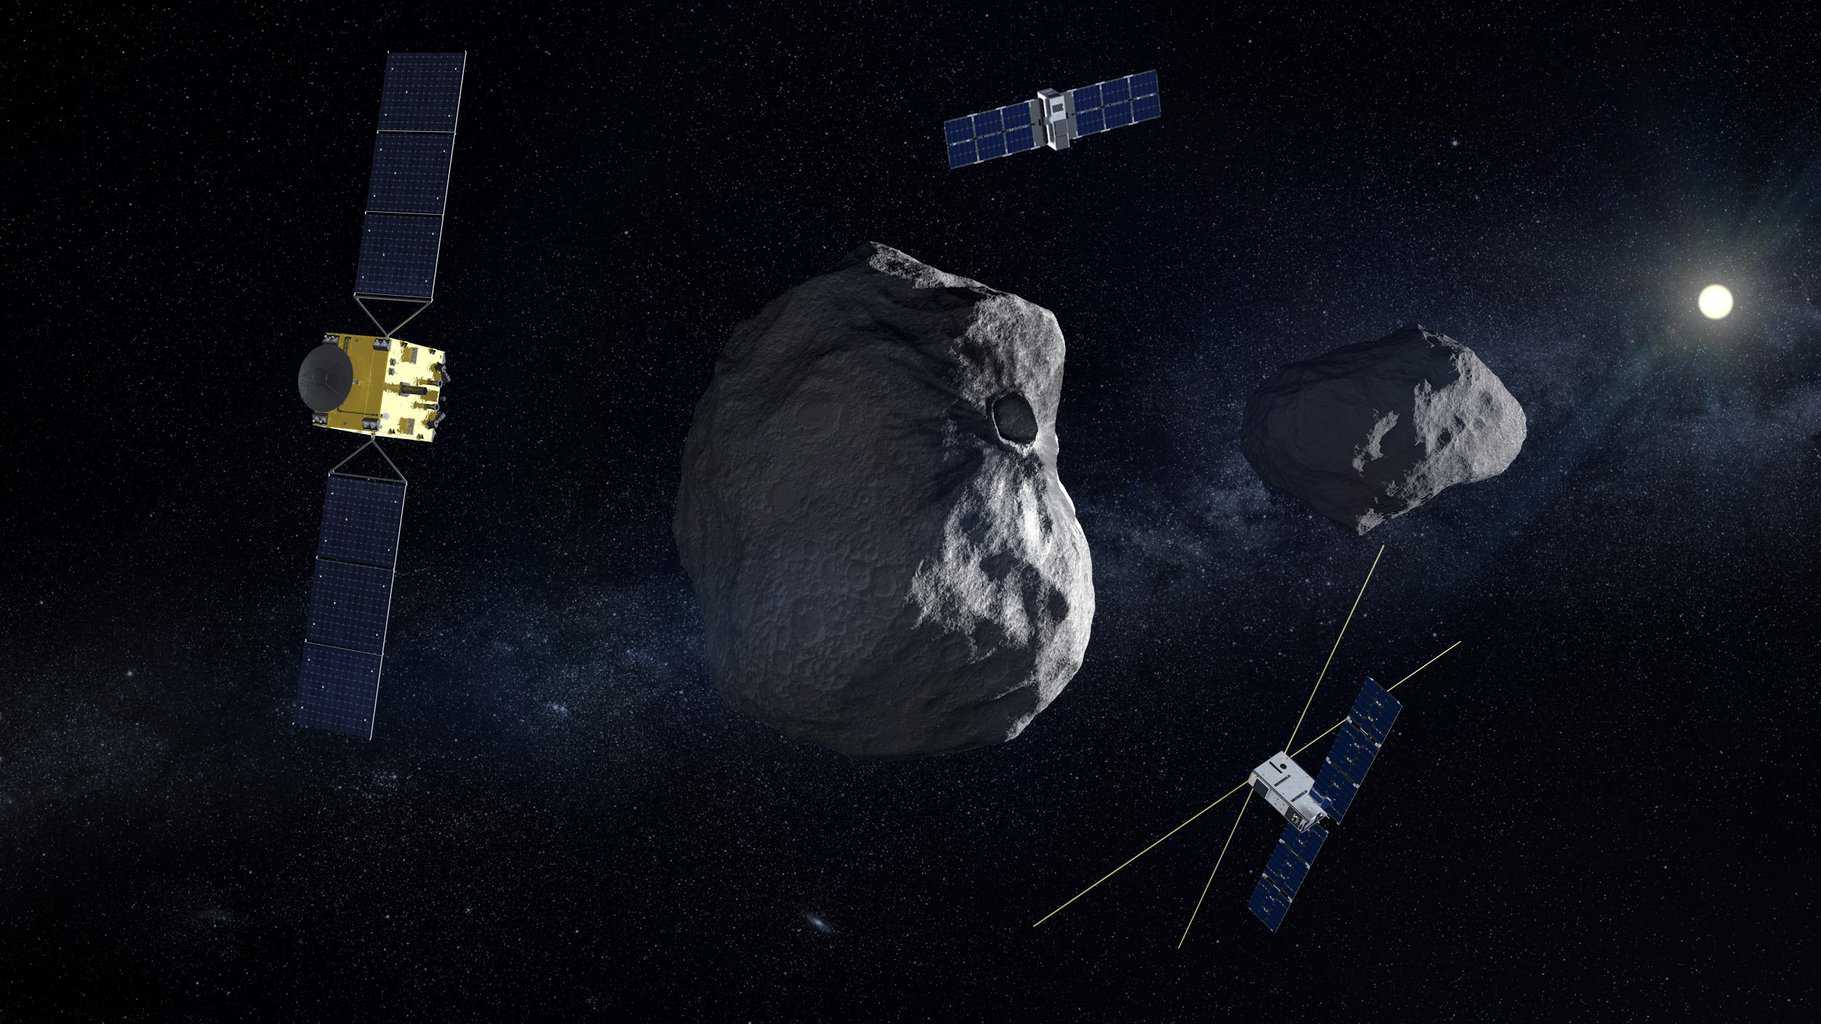 Premier test de déviation d’astéroïde avec les missions DART (NASA) et Hera (ESA)